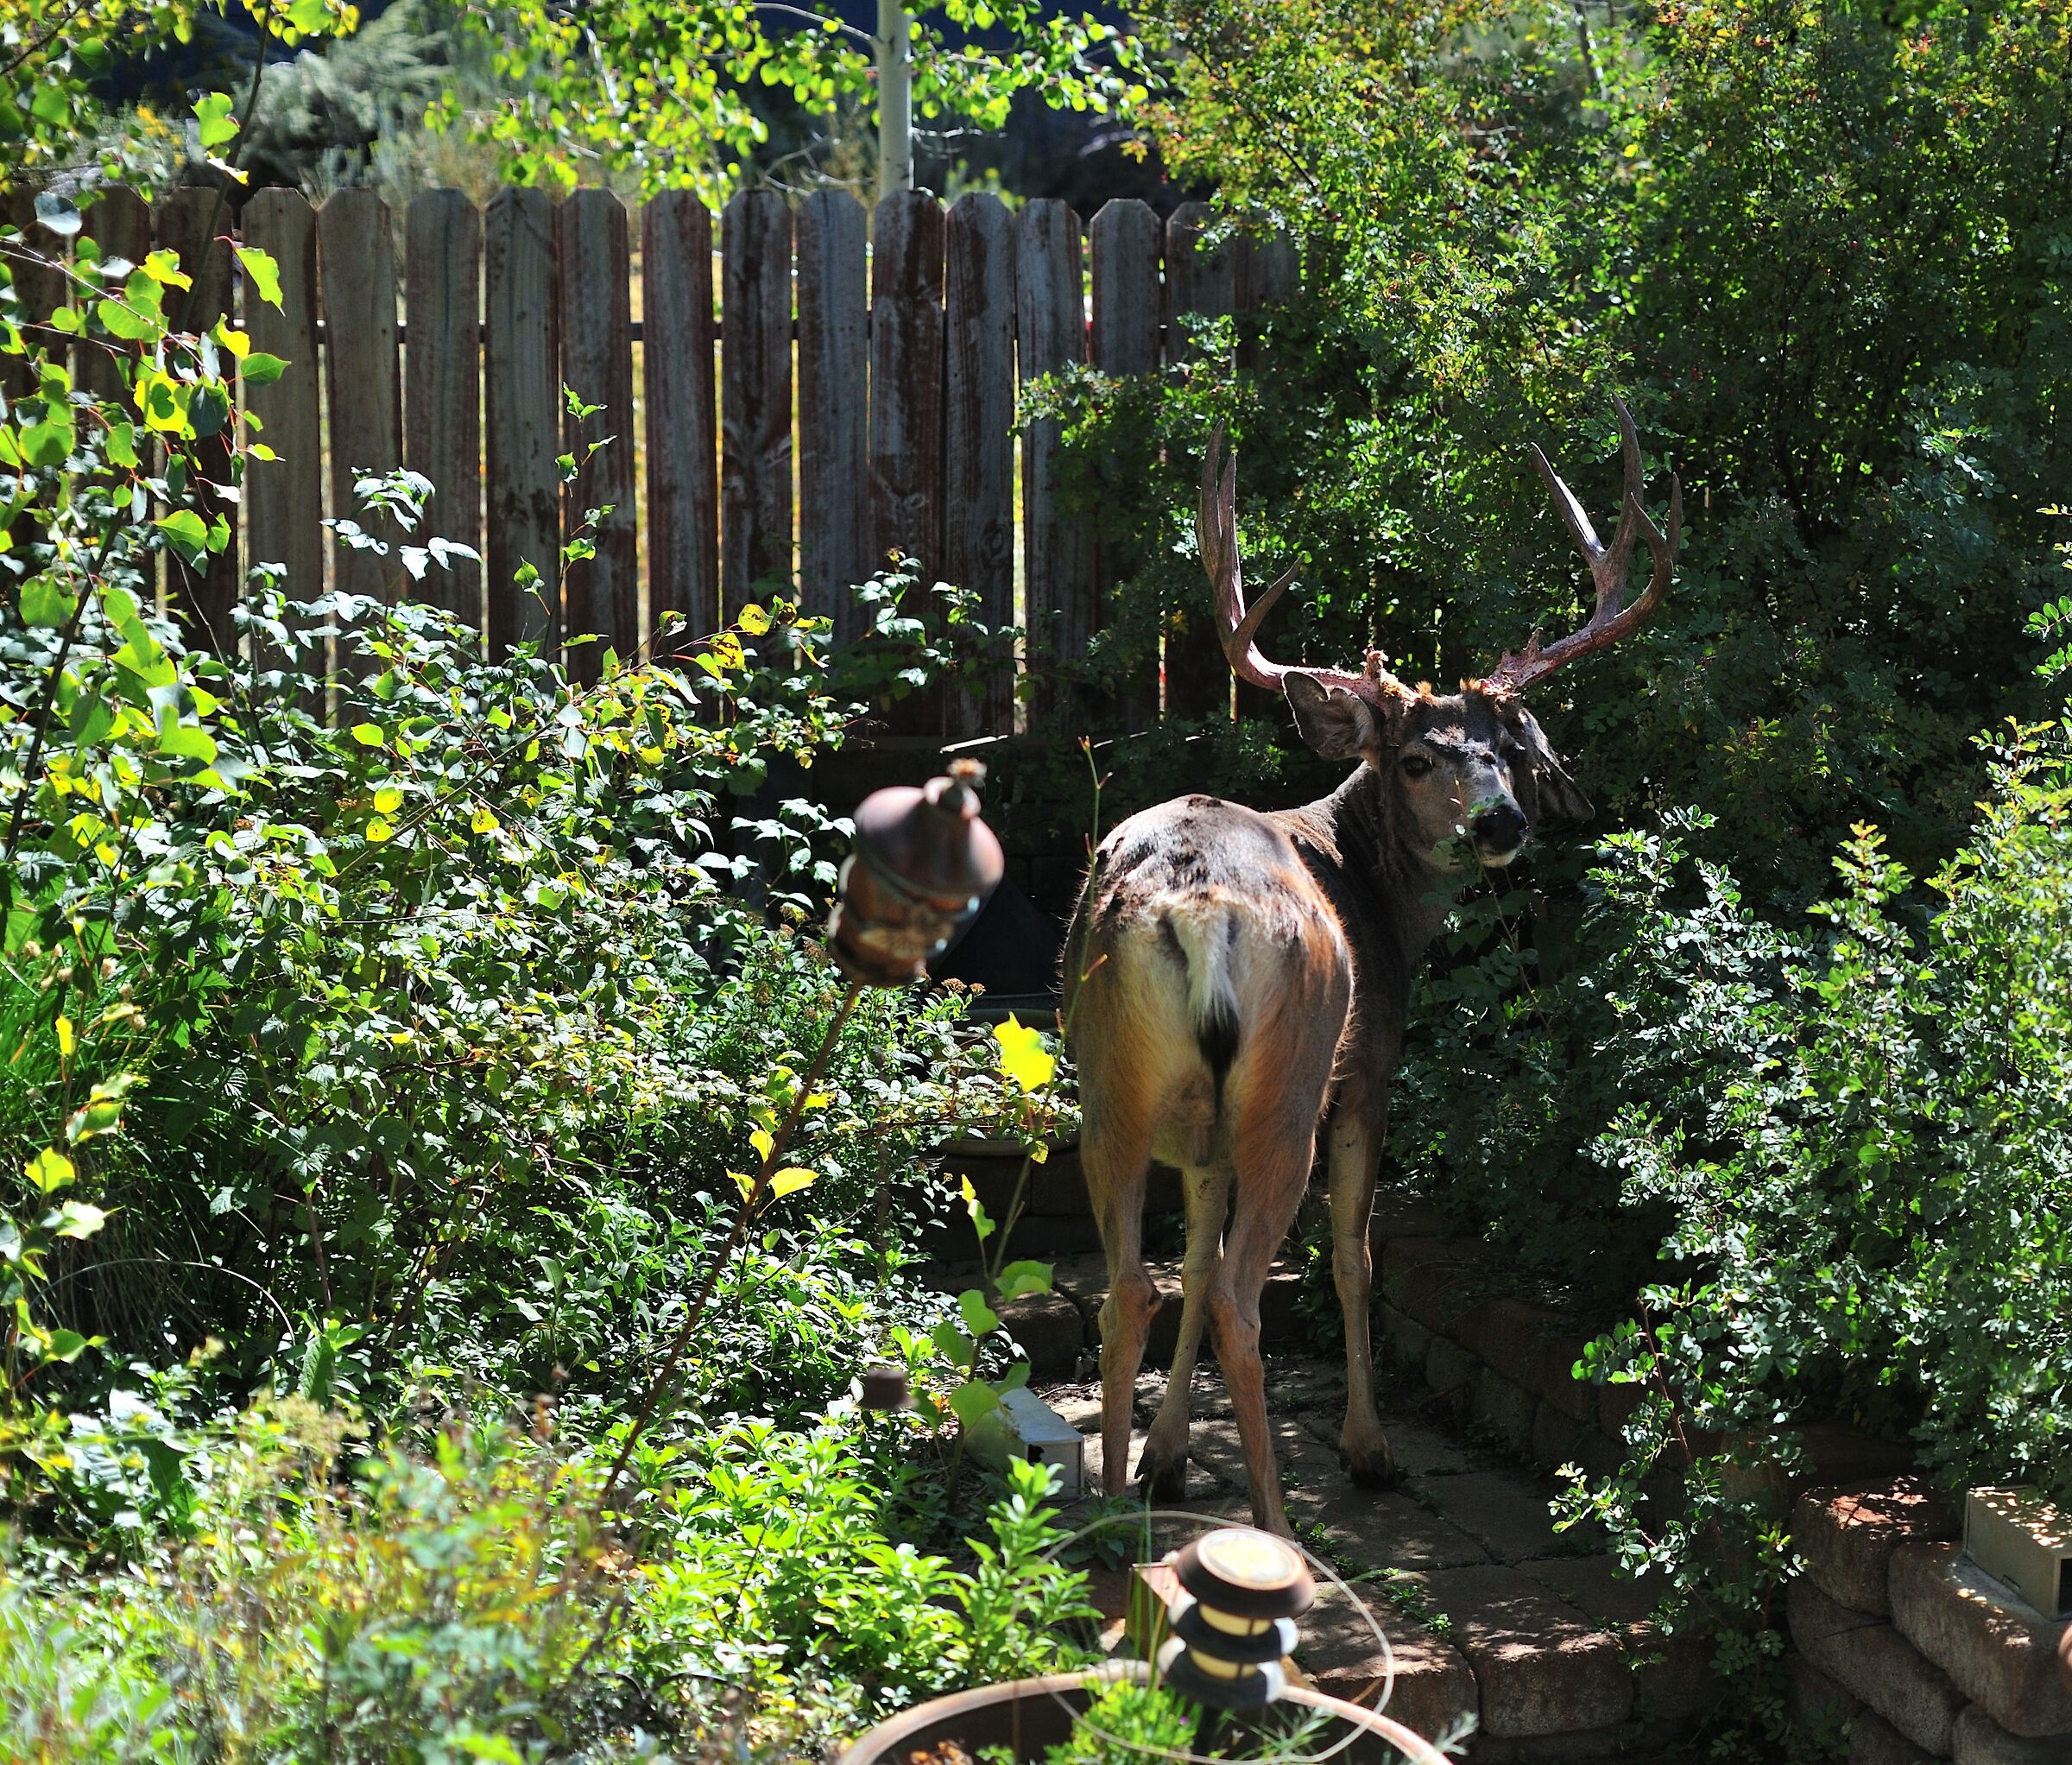 Floppy ear deer visiting our wild rose garden...